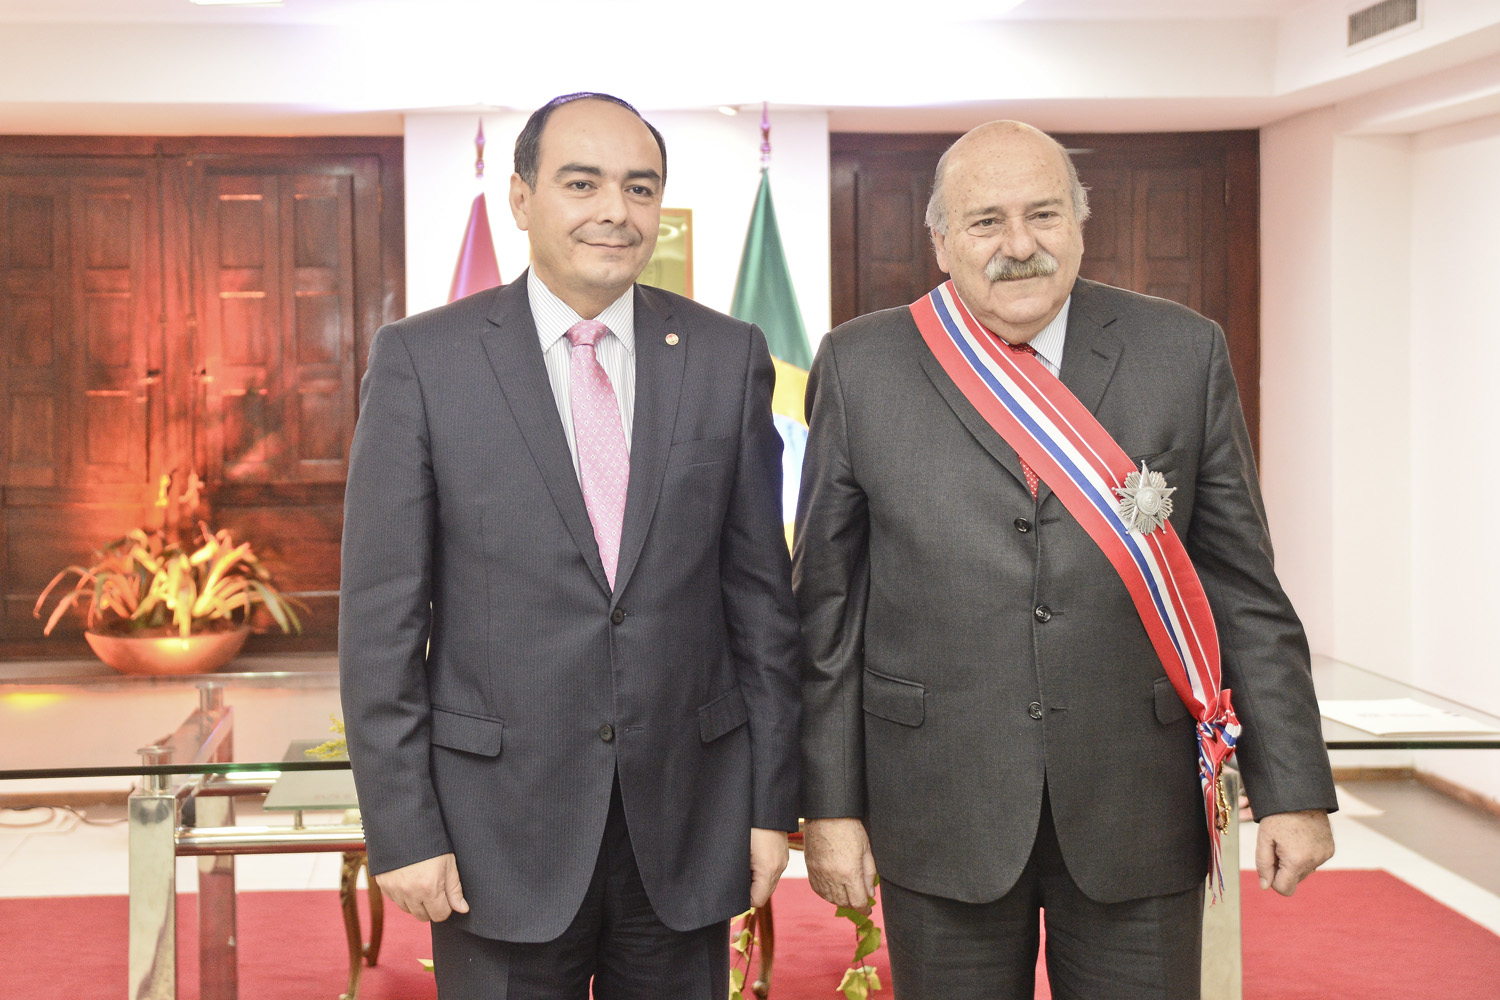 Cancillería destaca vínculos con Brasil en seguridad y comercio en acto de condecoración a embajador saliente